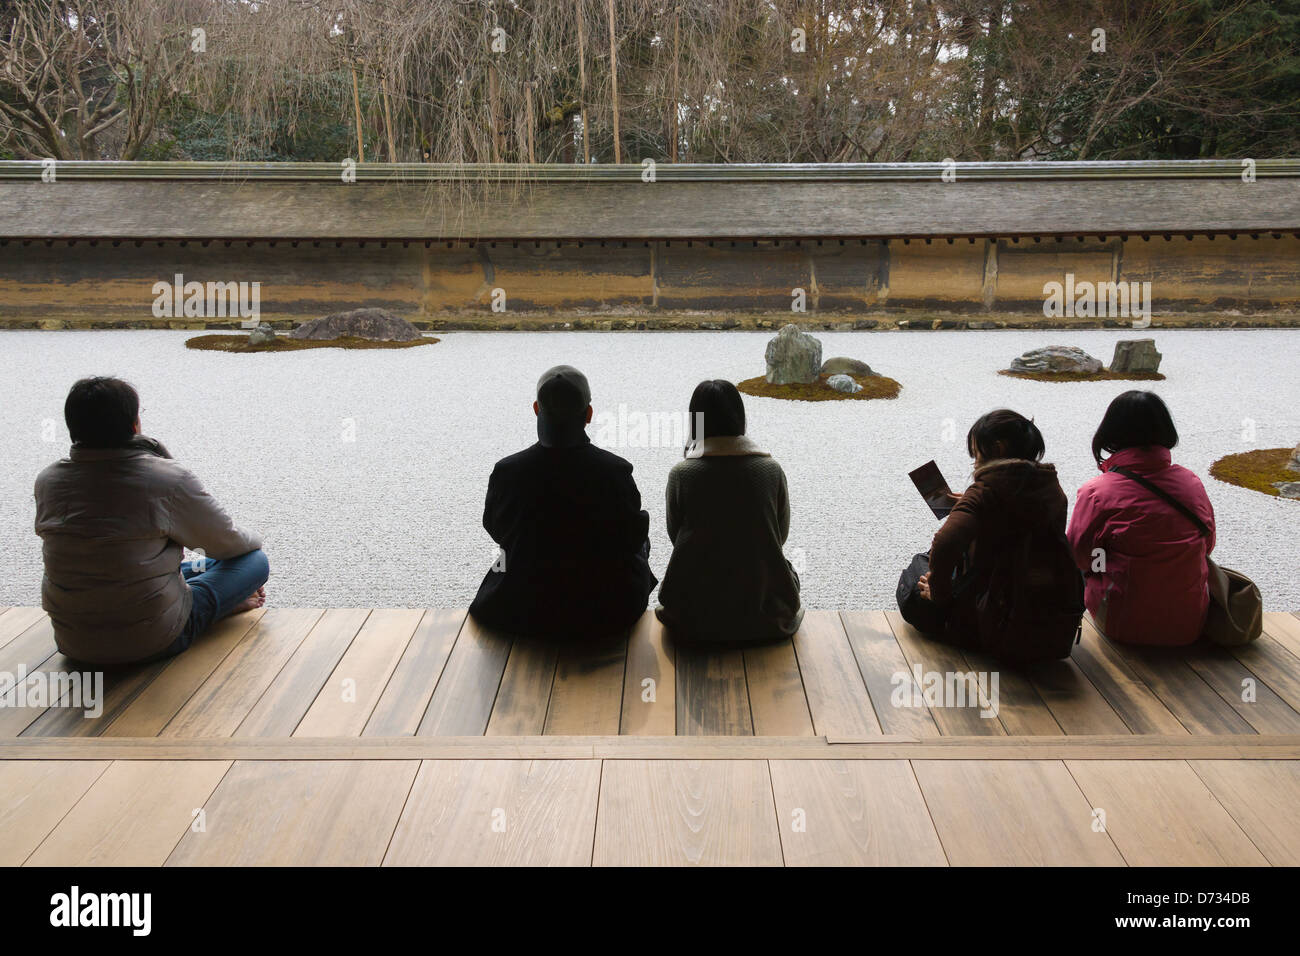 Tourists watching the Zen garden in Tofuku-ji temple, Kyoto, Japan Stock Photo